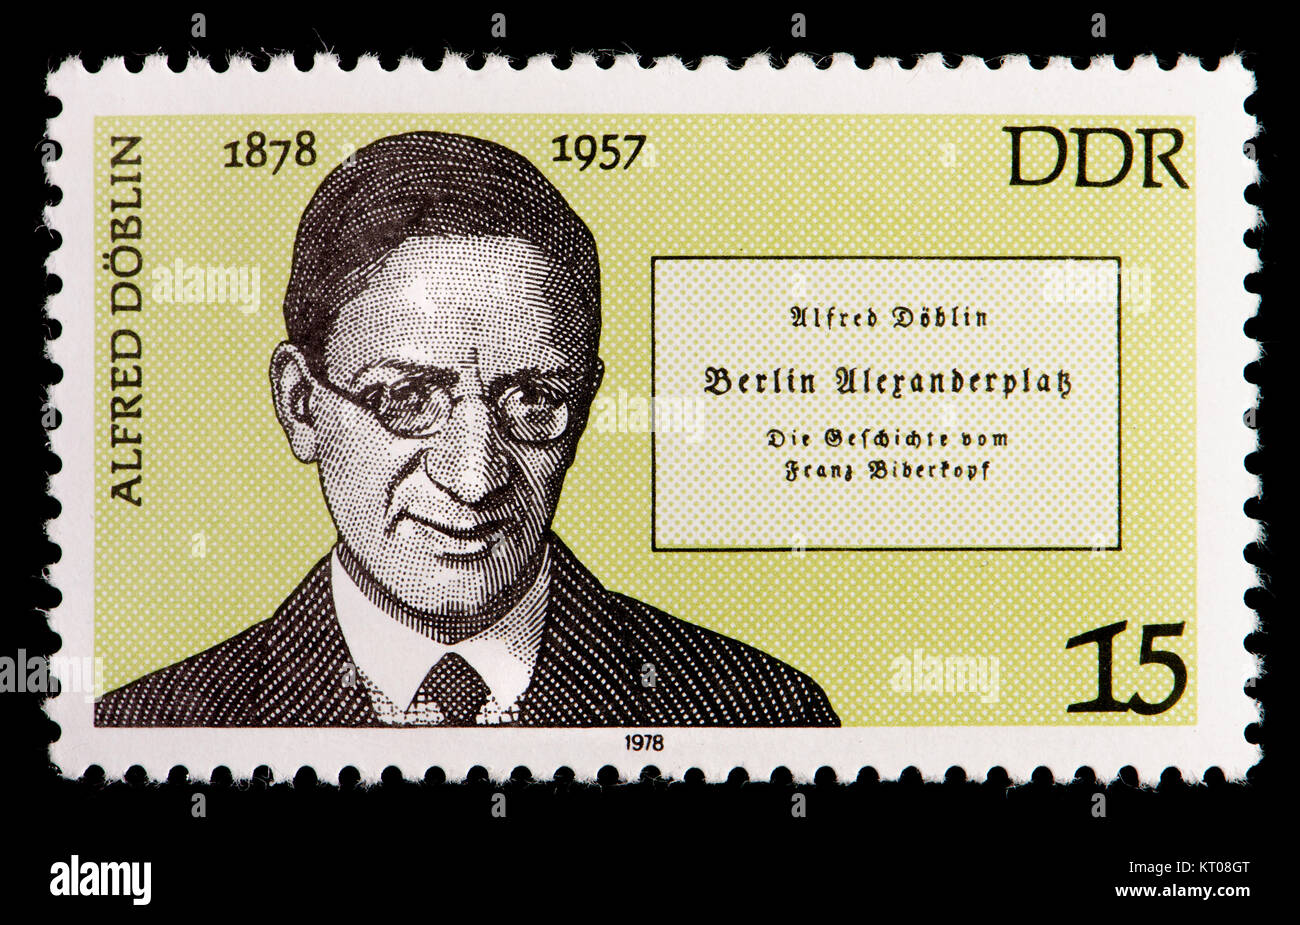 Ddr (DDR) Briefmarke (1978): Bruno Alfred Döblin (1878-1957), deutscher Schriftsteller, Essayist und Arzt, am besten für seinen Roman Berlin Alexa bekannt Stockfoto